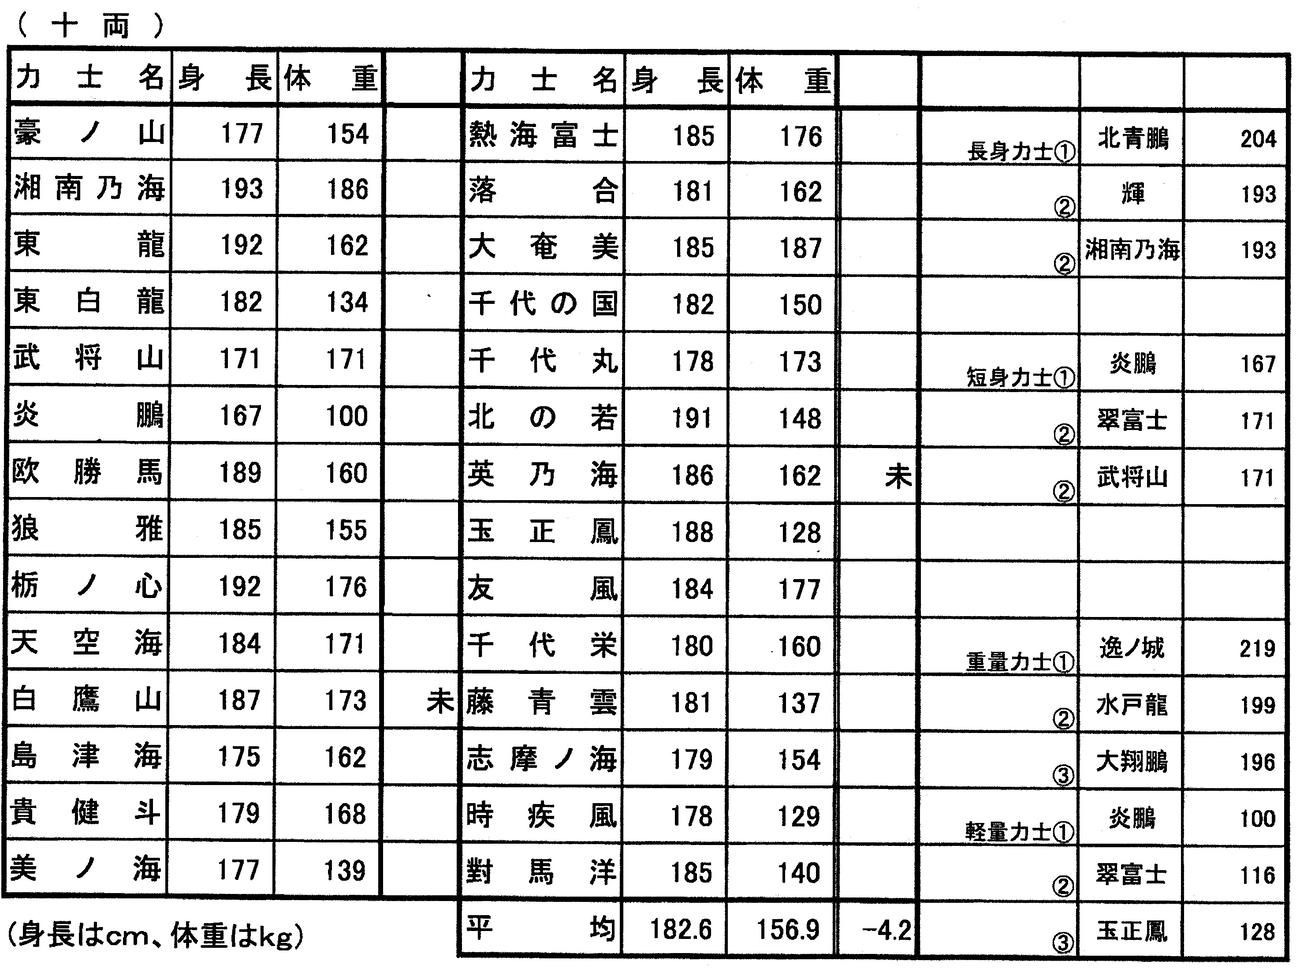 日本相撲協会が発表した十両力士の身長体重表